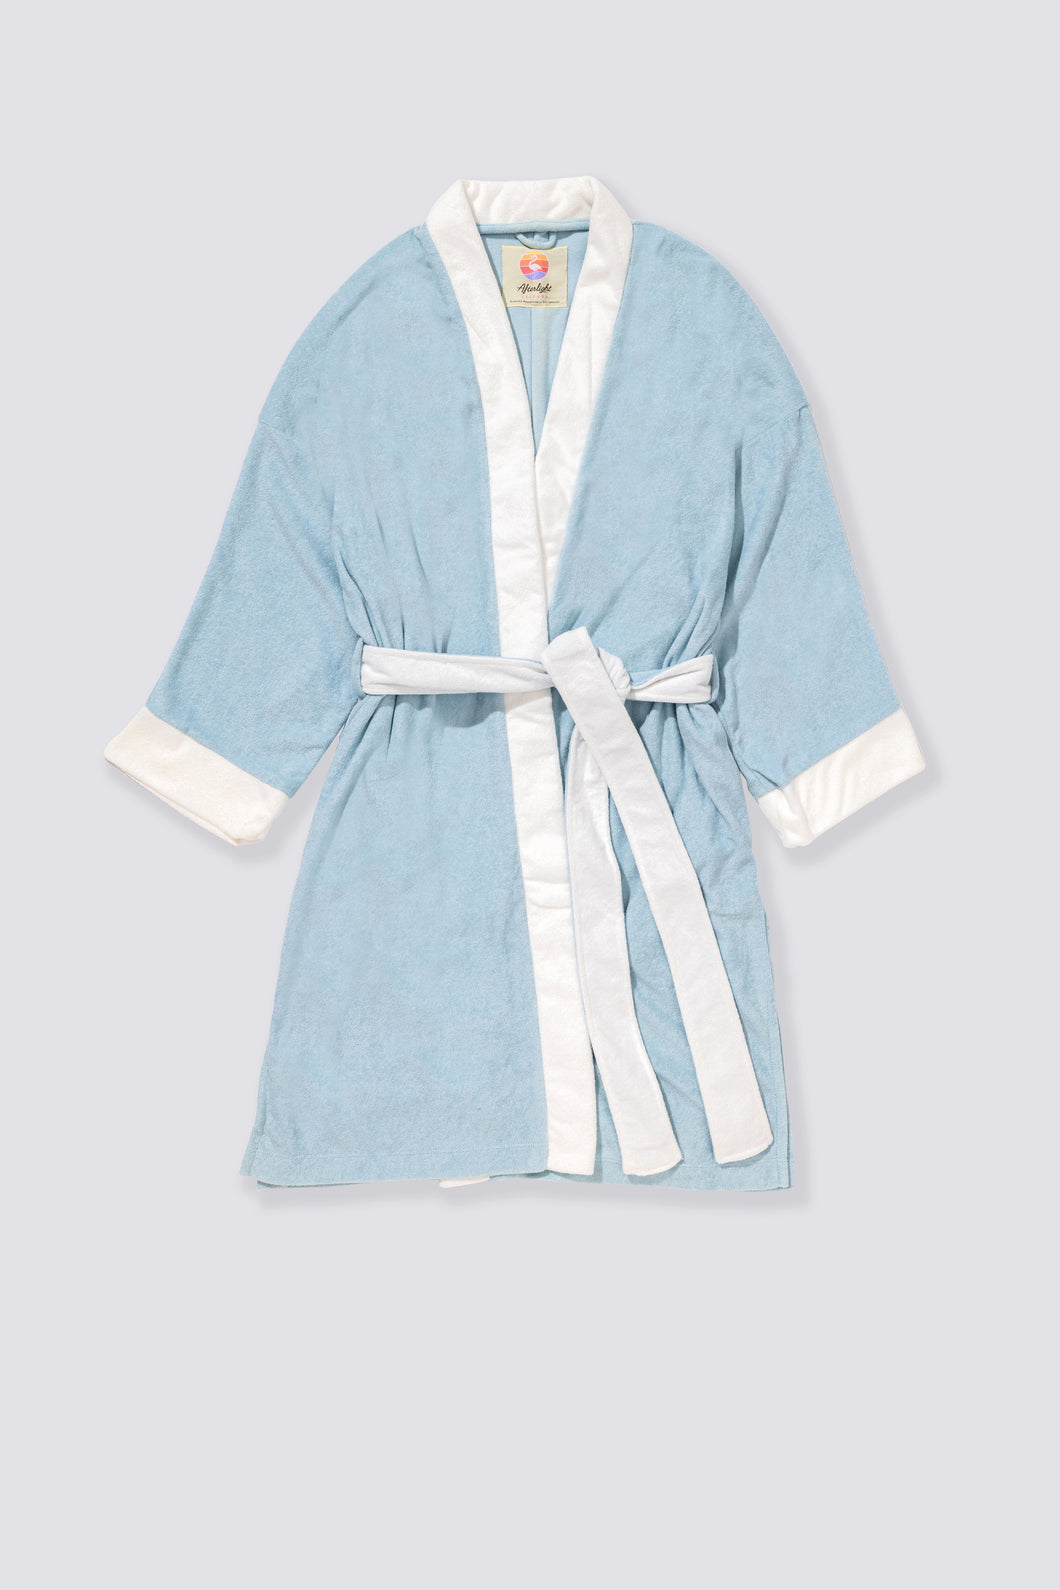 Terry Cloth Kimono - Amalfi Azure